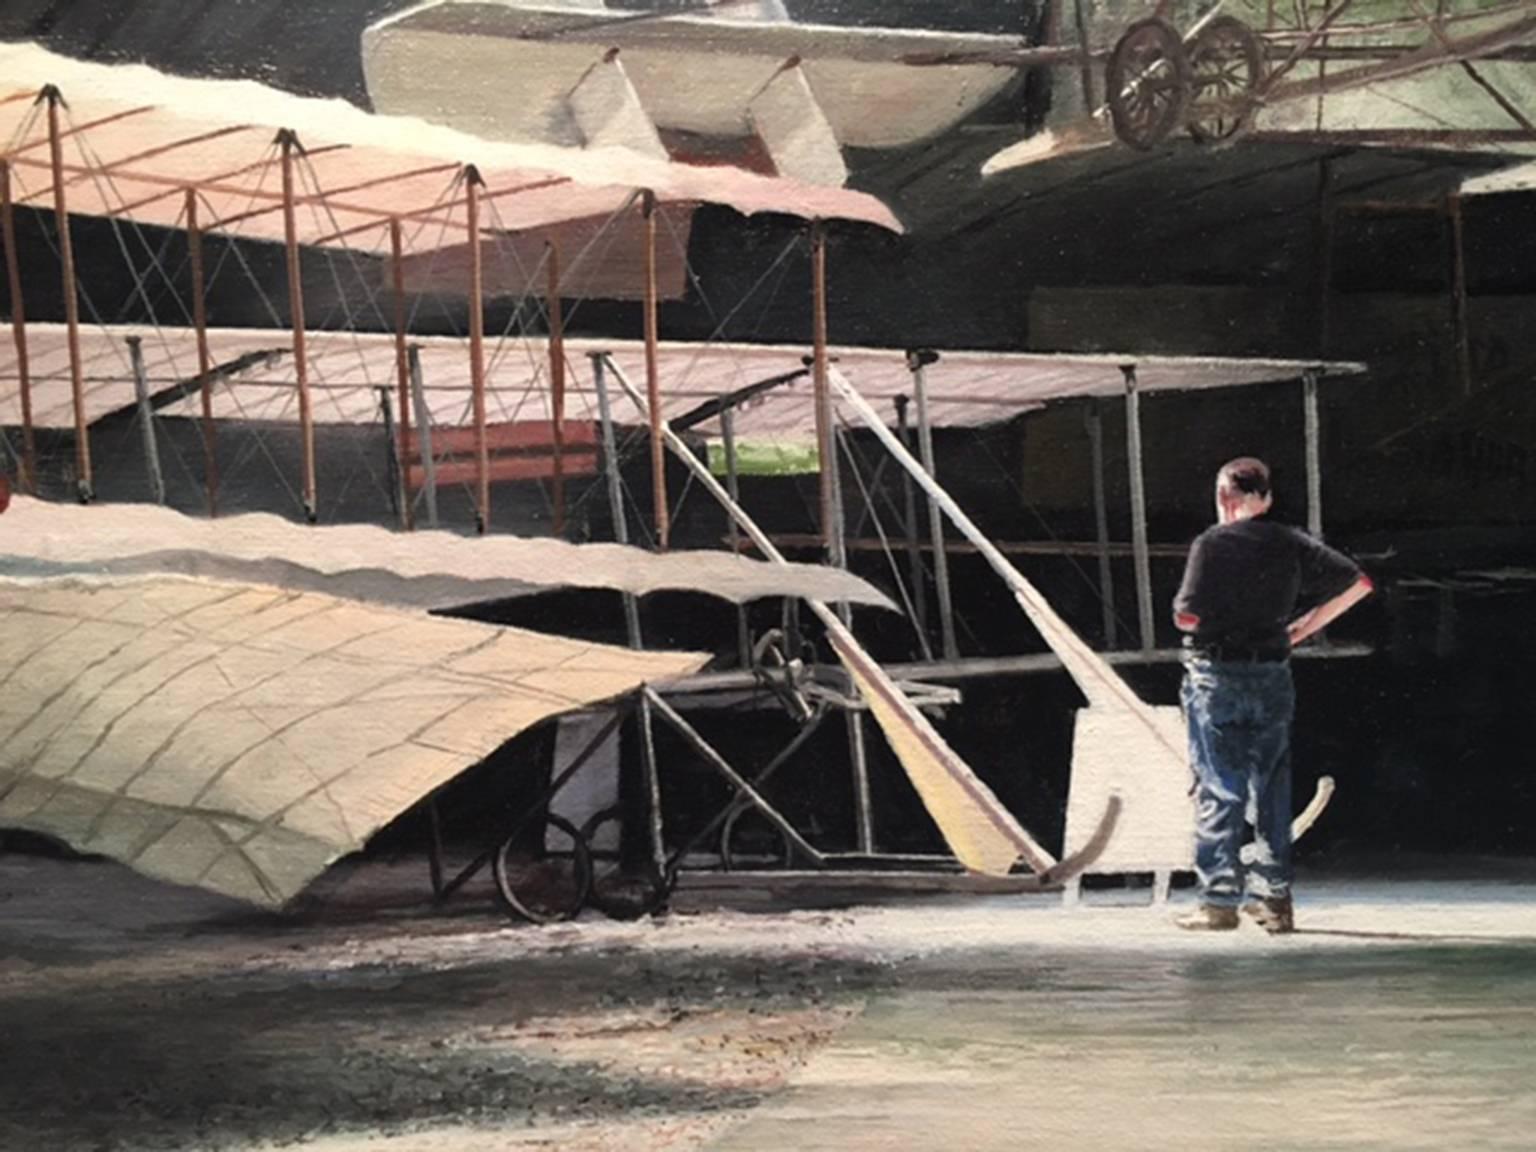 Photorealist painting airplane hangar, 